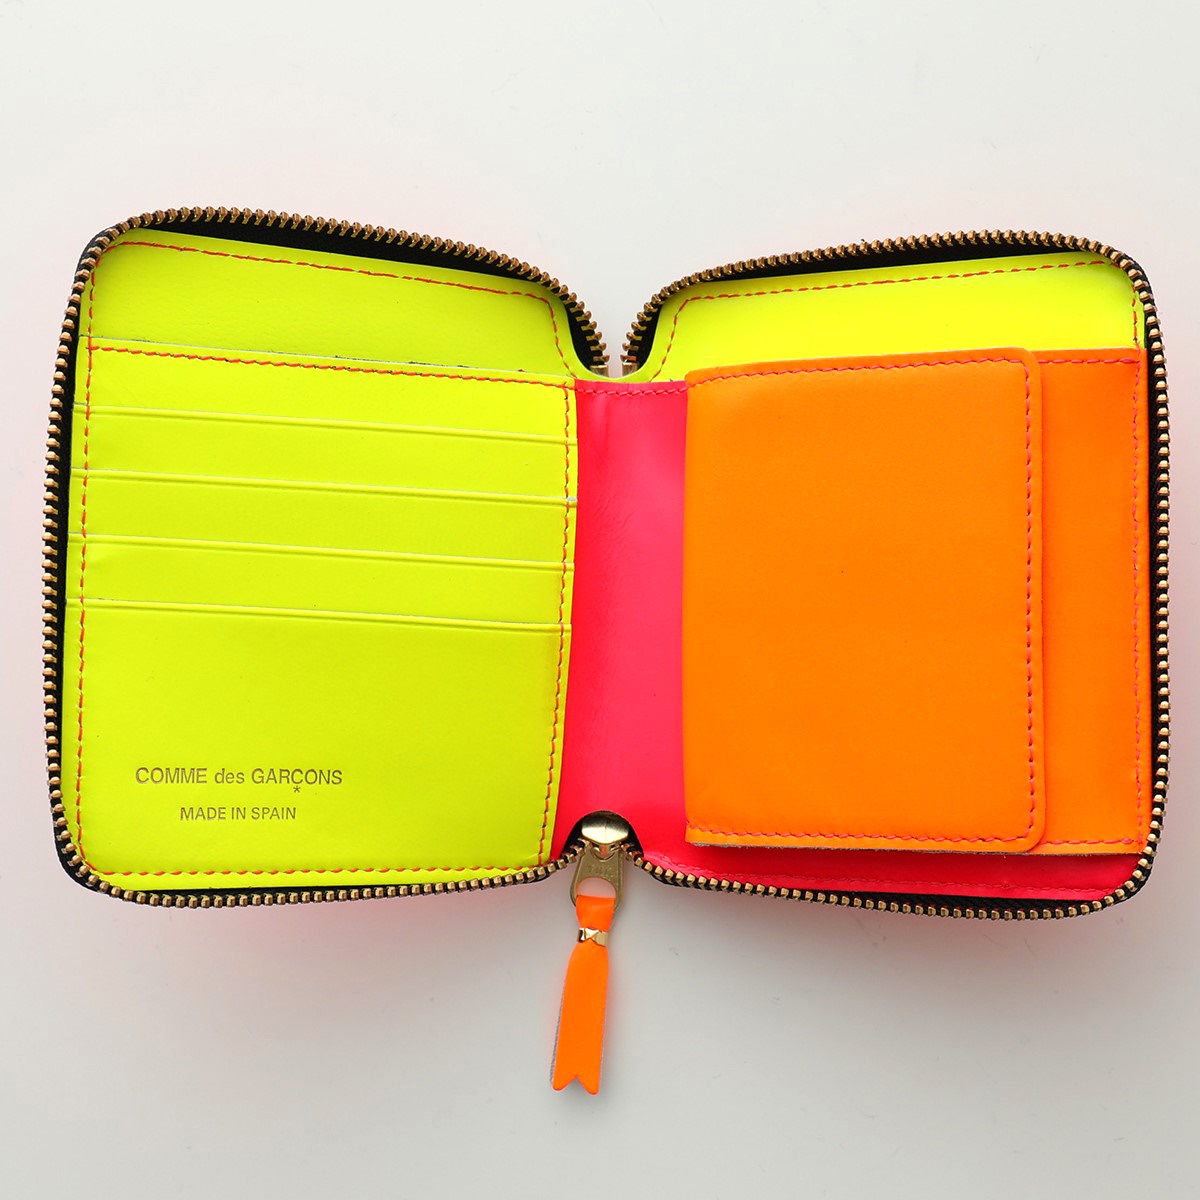 COMME des GARCONS コムデギャルソン SA2100SF SUPER FLUO WALLET カラー6色 レザー 二つ折り財布 ミニ財布  蛍光 ネオンカラー メンズ レディース | インポートセレクト musee